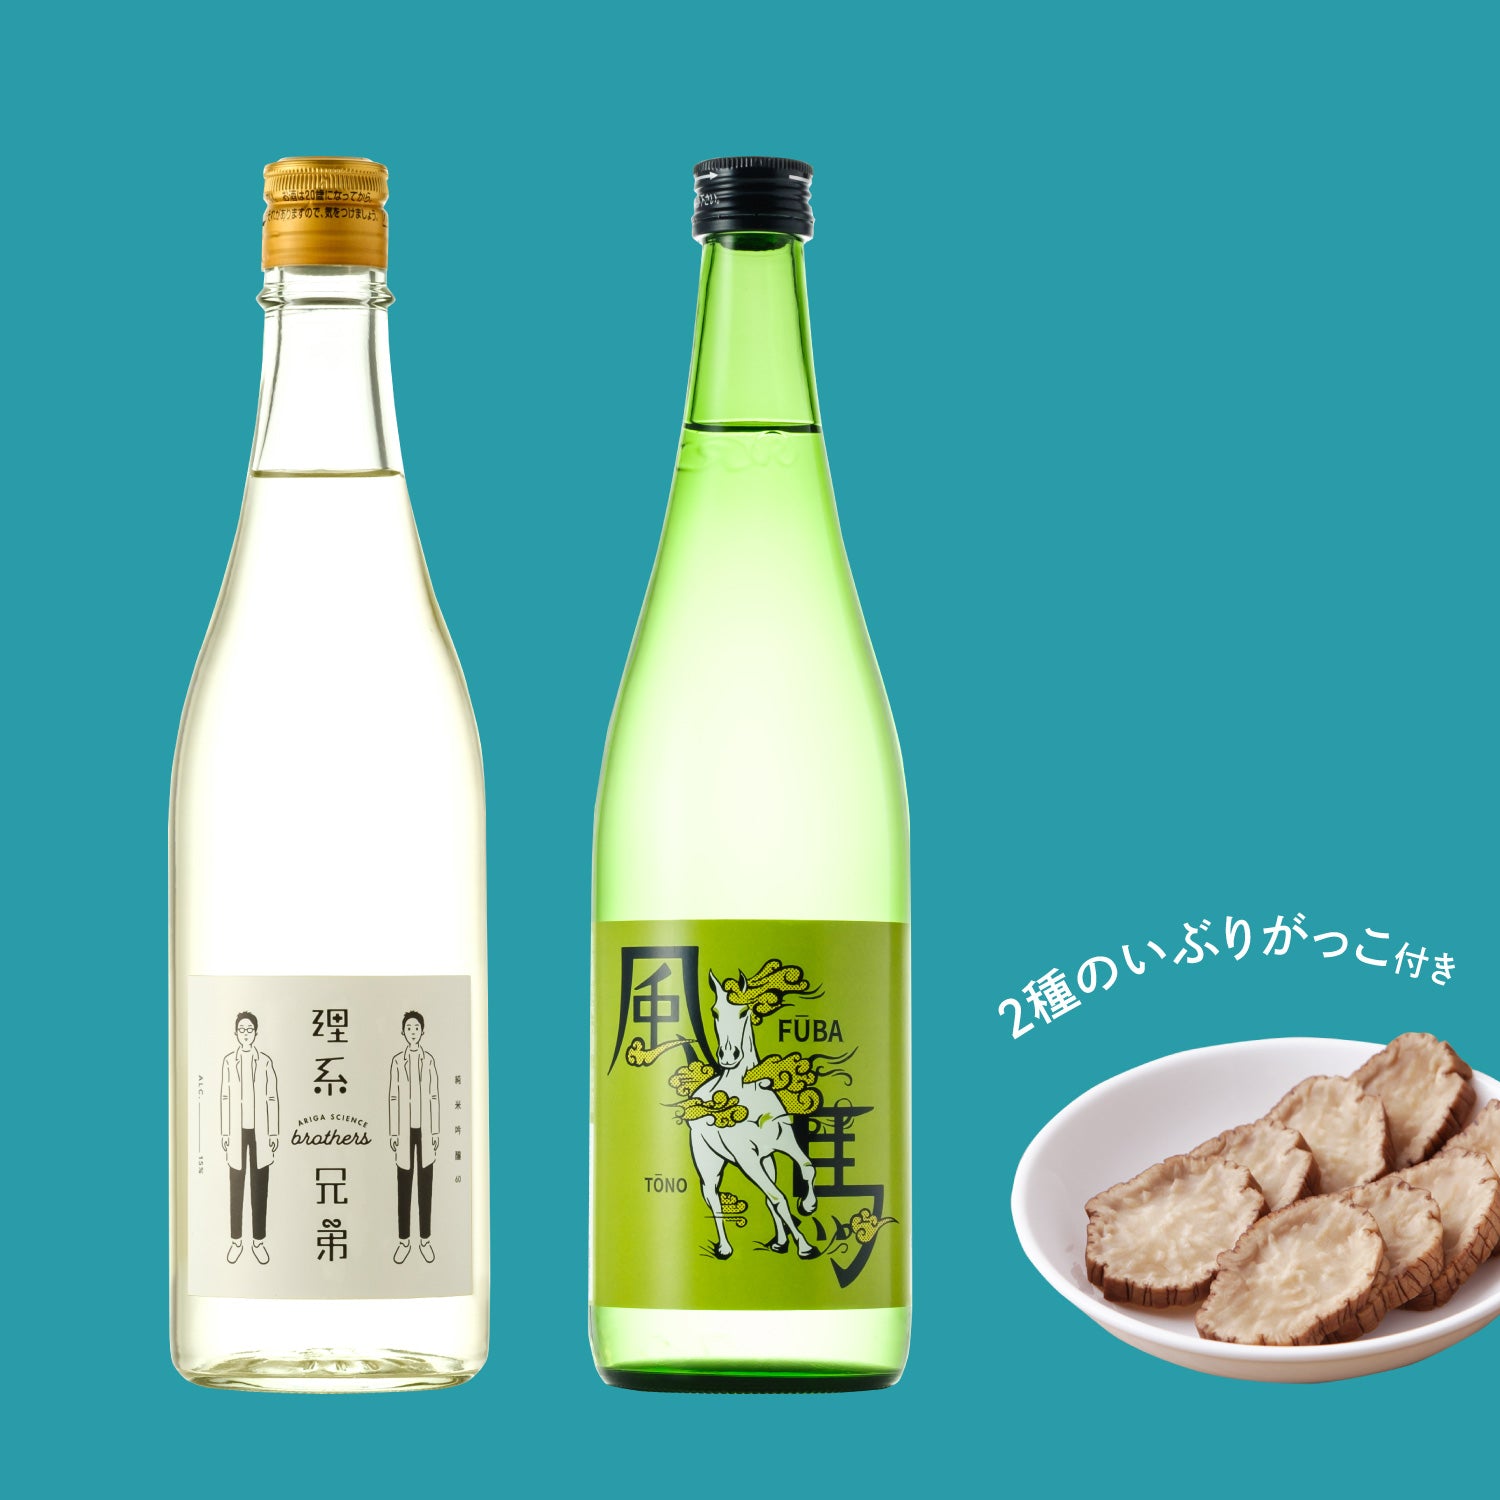 【20セット限定】東北の日本酒といぶりがっこセット